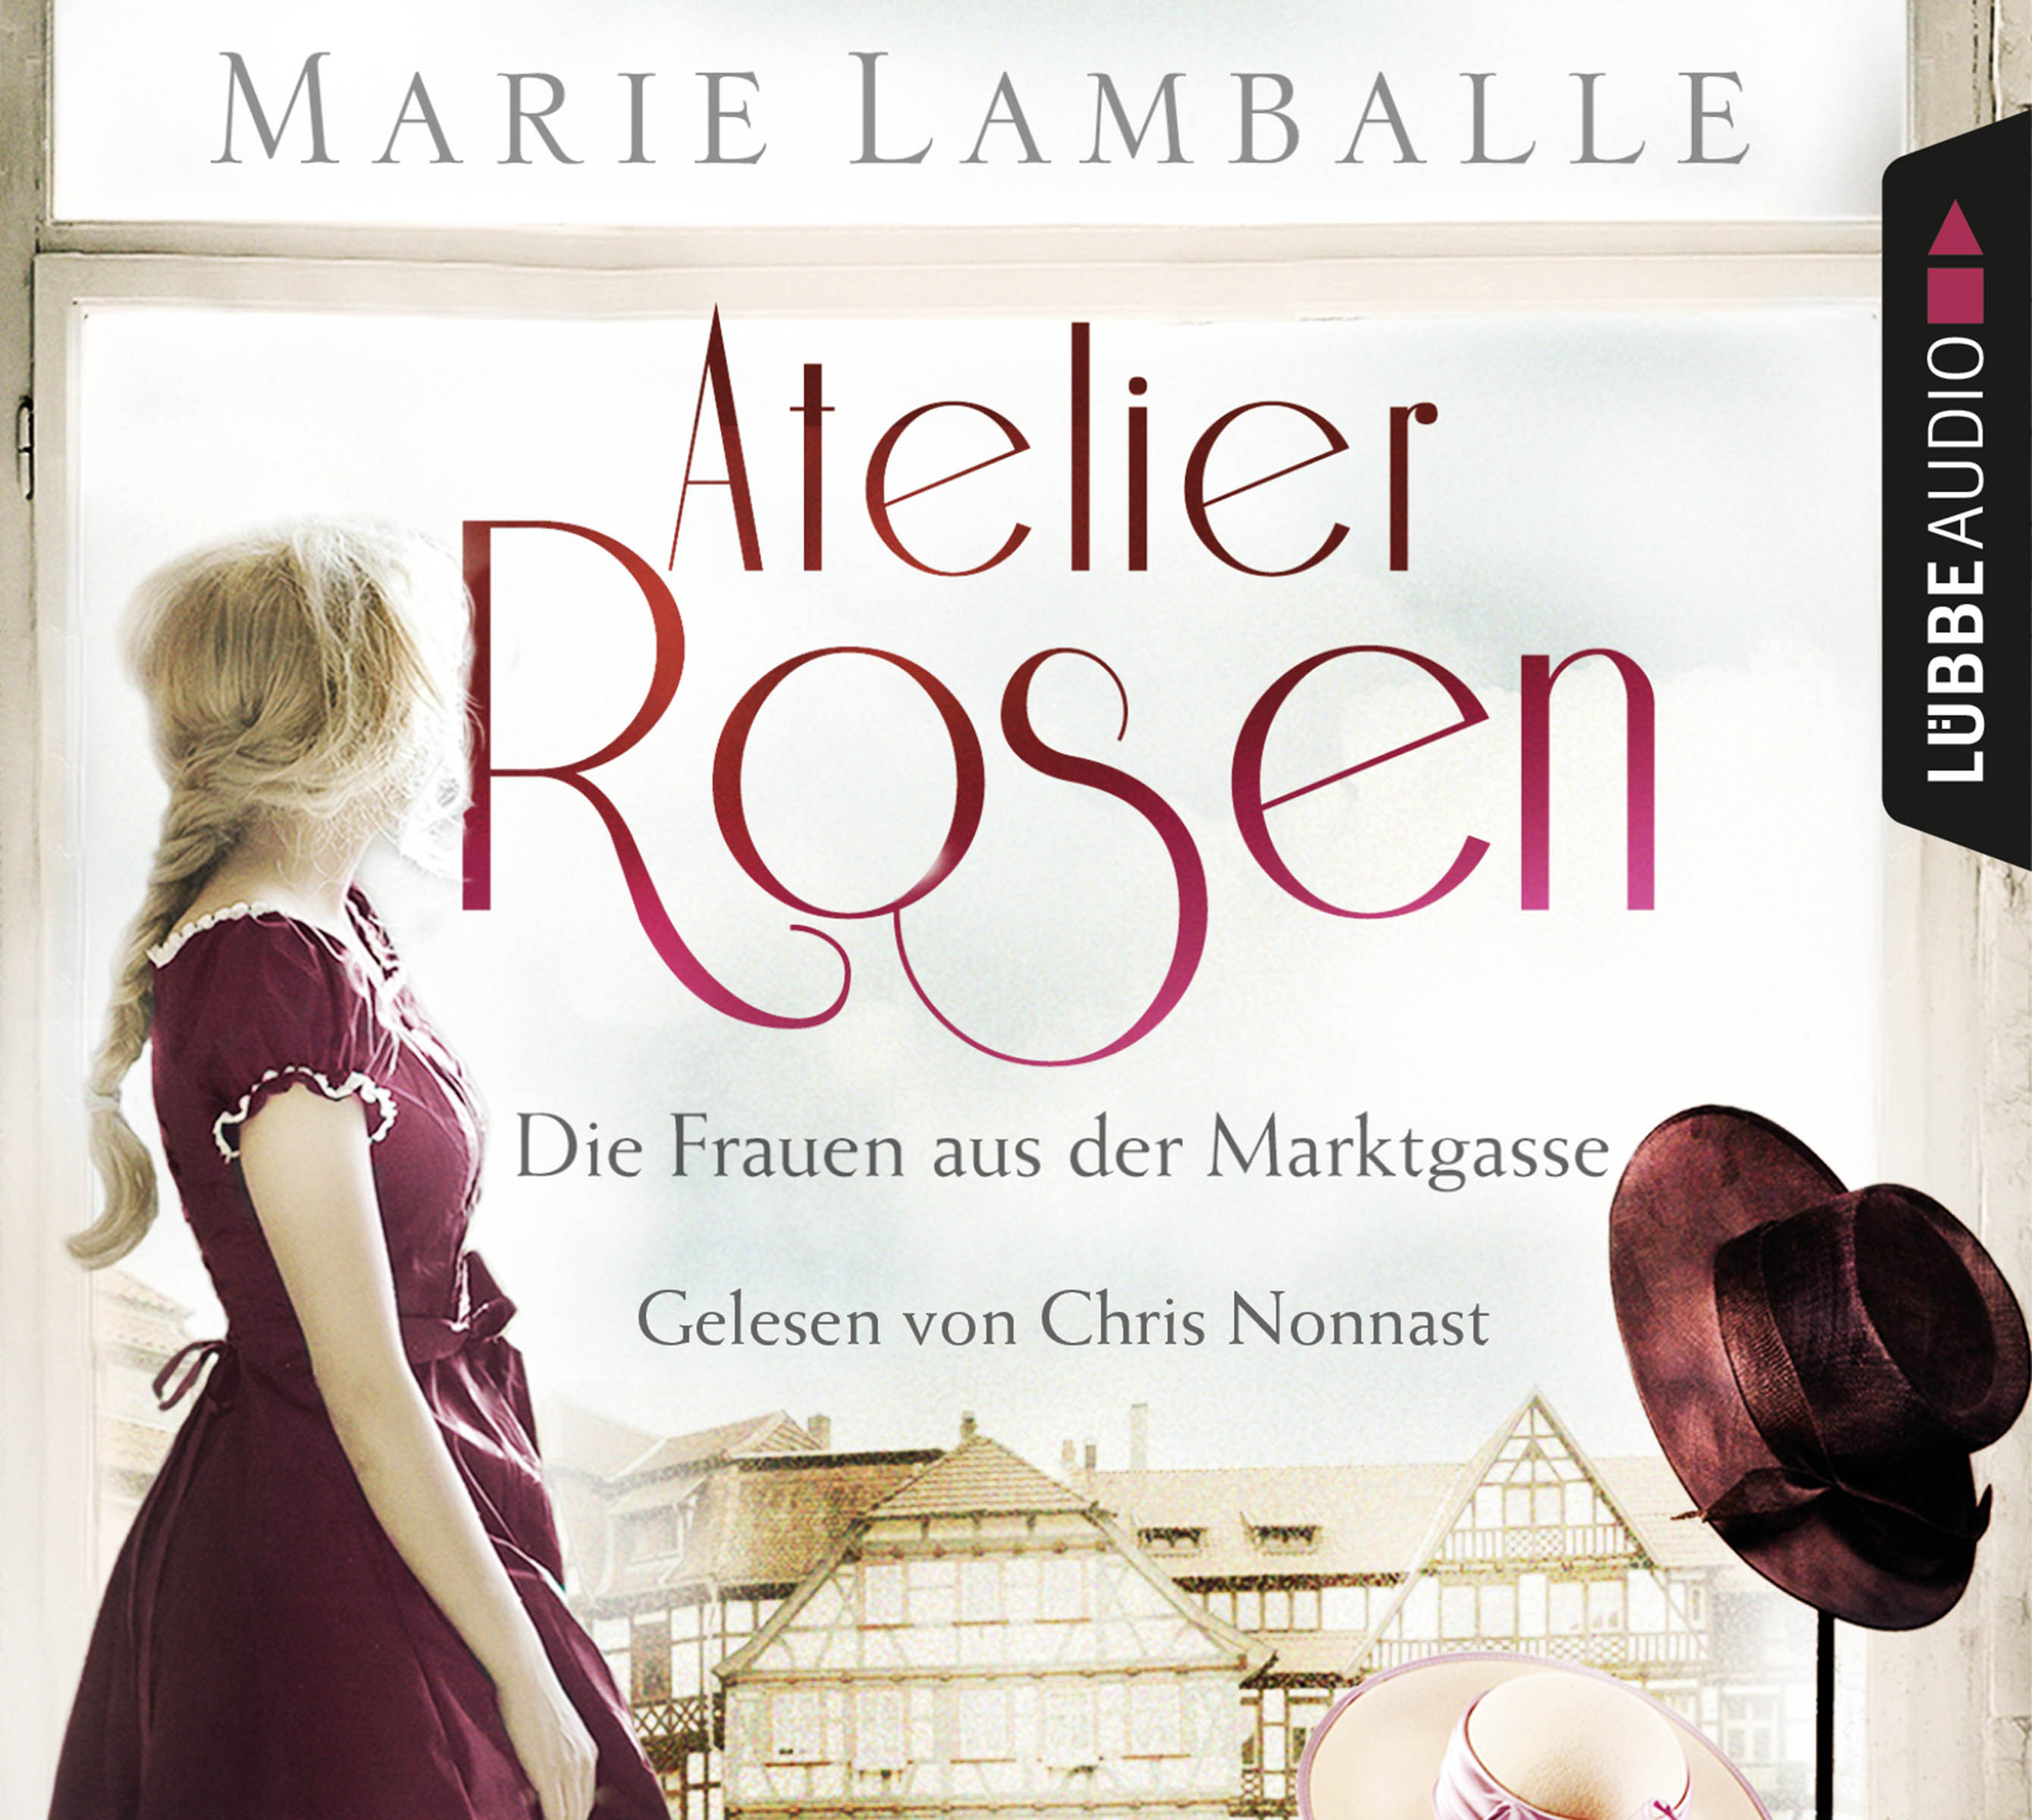 Marie Lamballe - Atelier Rosen